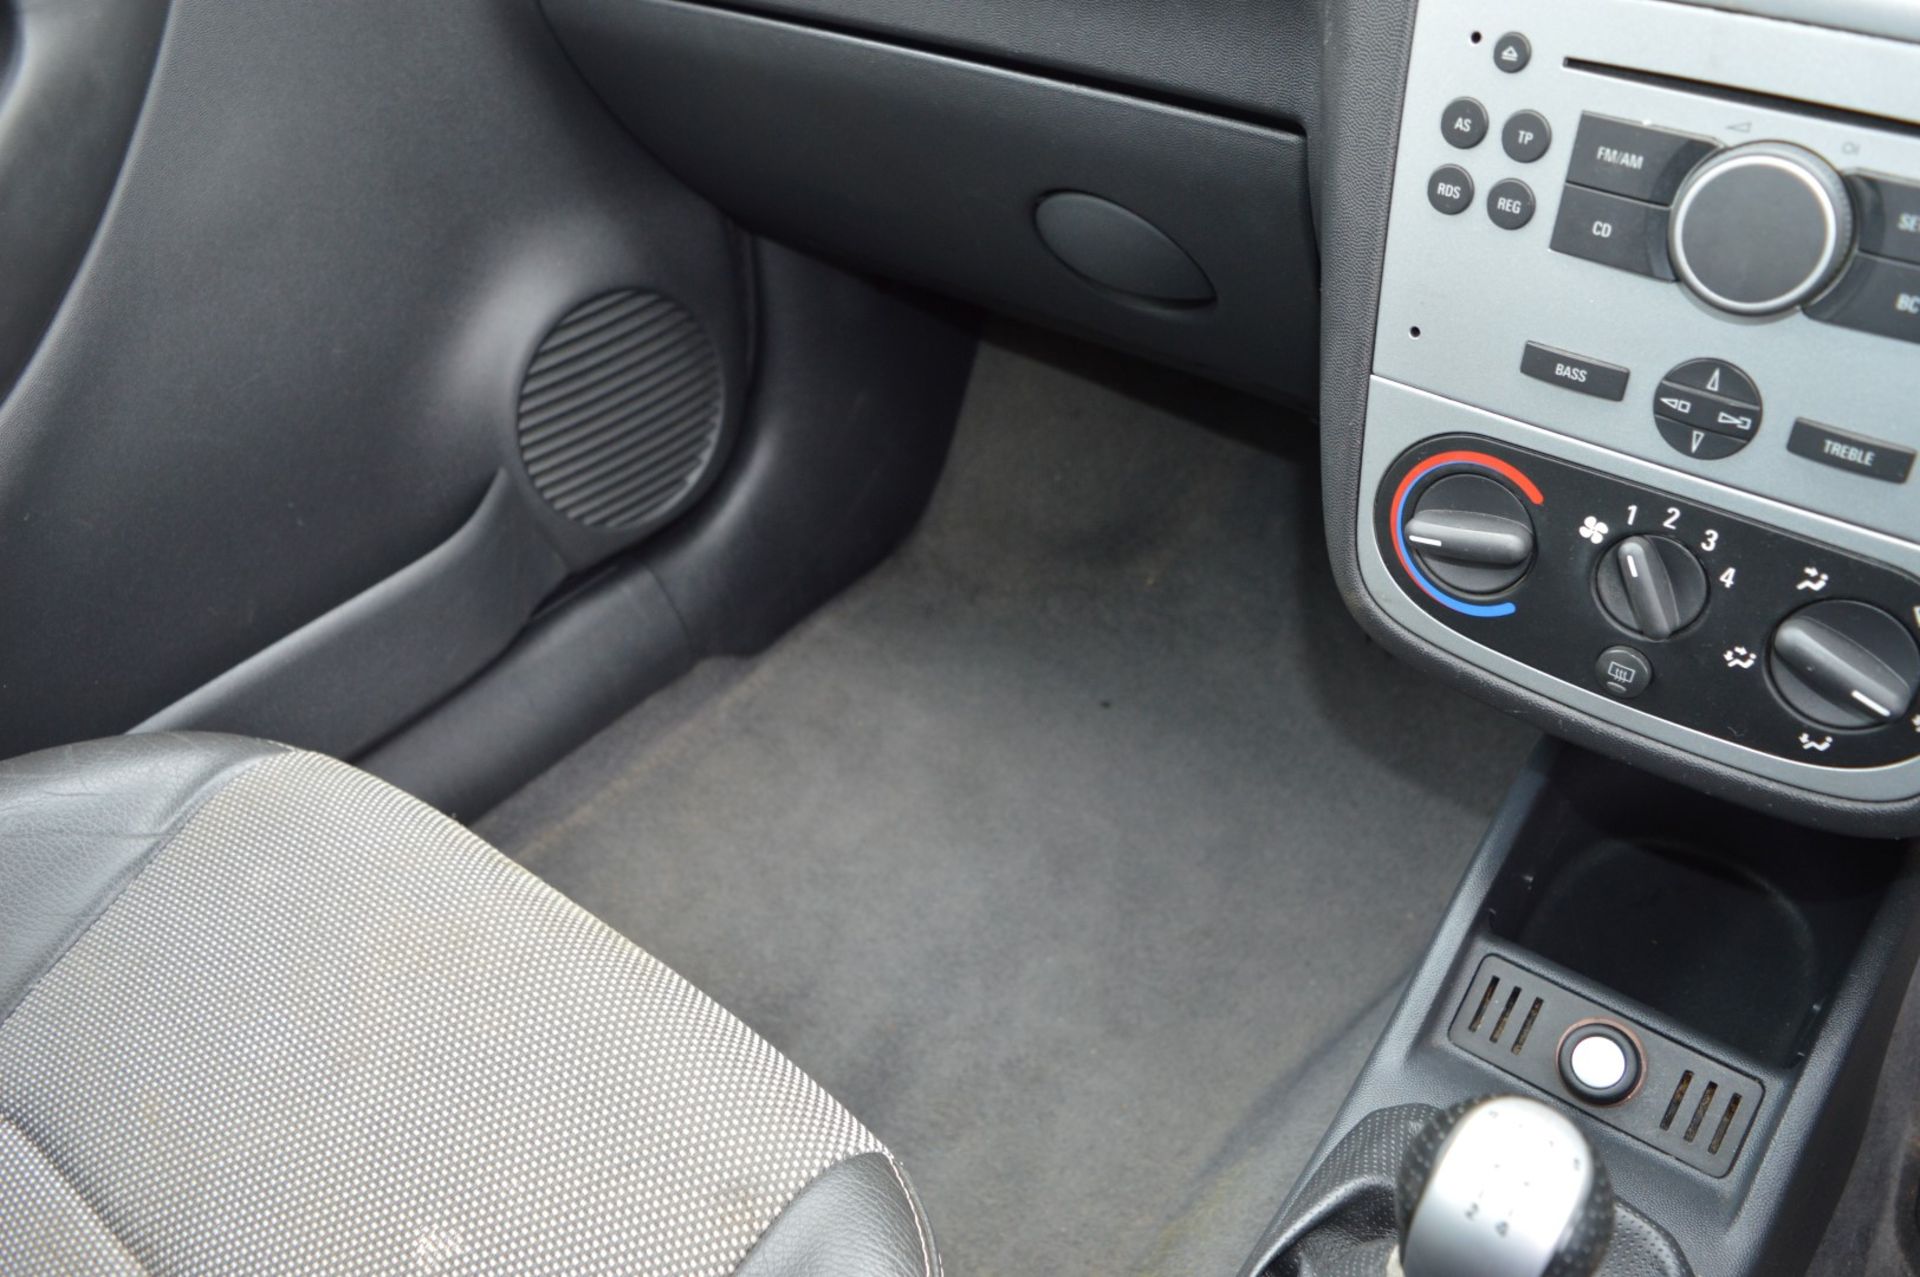 1 x Vauxhall Corsa SXI+ 3 Door Hatchback 1.2 - 2006 56 Plate - 78,000 Miles - MOT June 2018 - Image 26 of 36